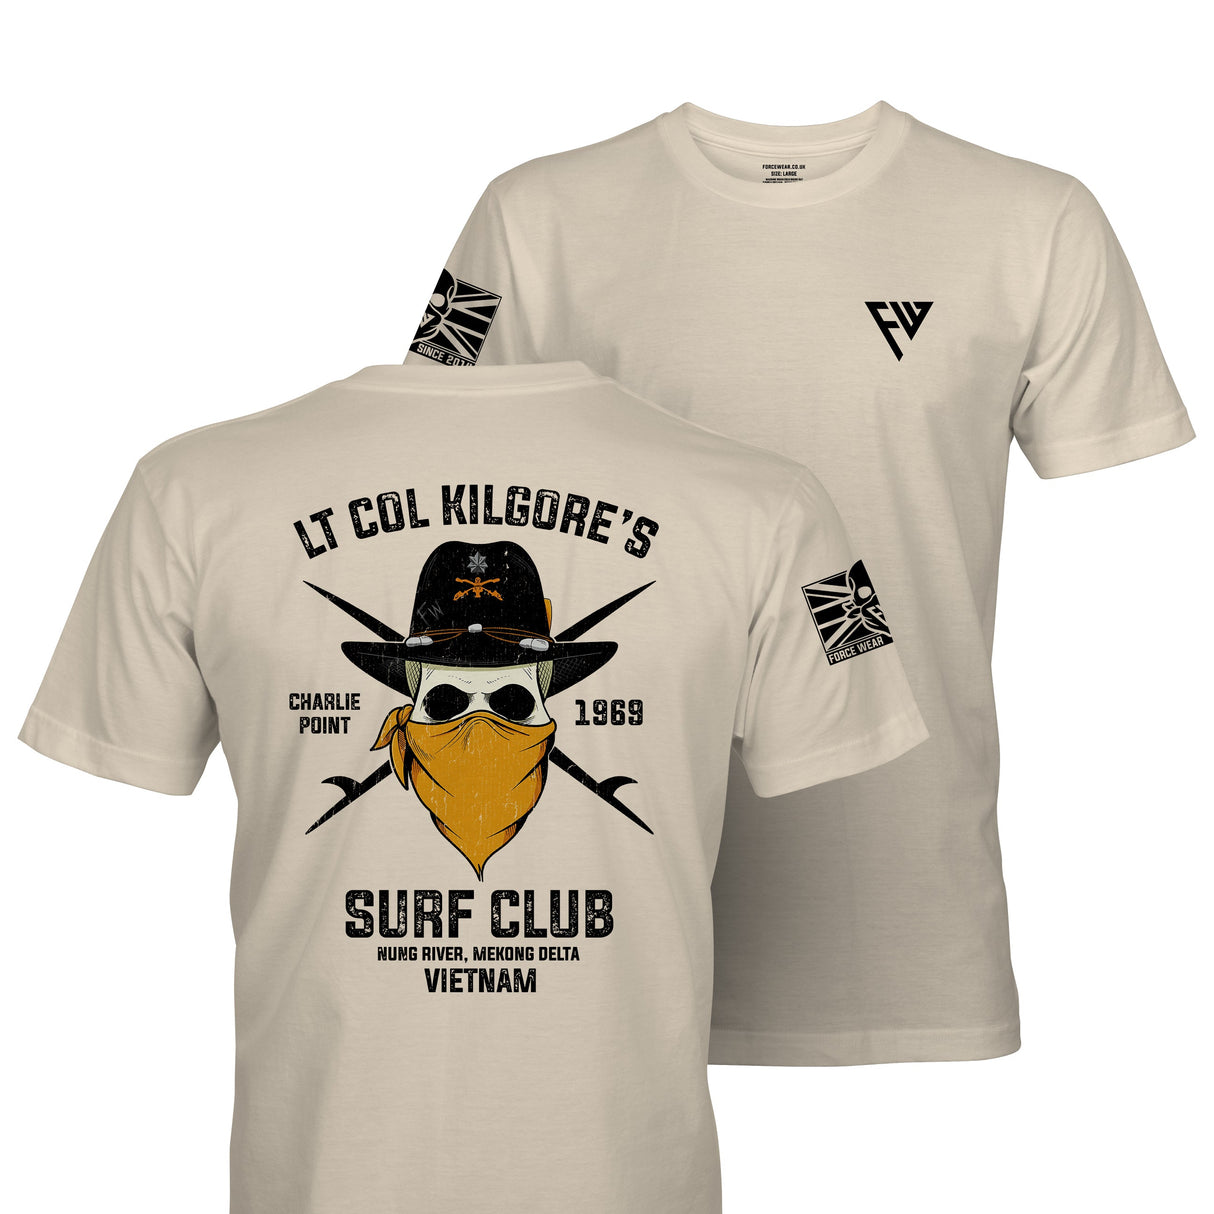 KILGORE'S SURF CLUB TAG & BACK - Force Wear HQ - T-SHIRTS